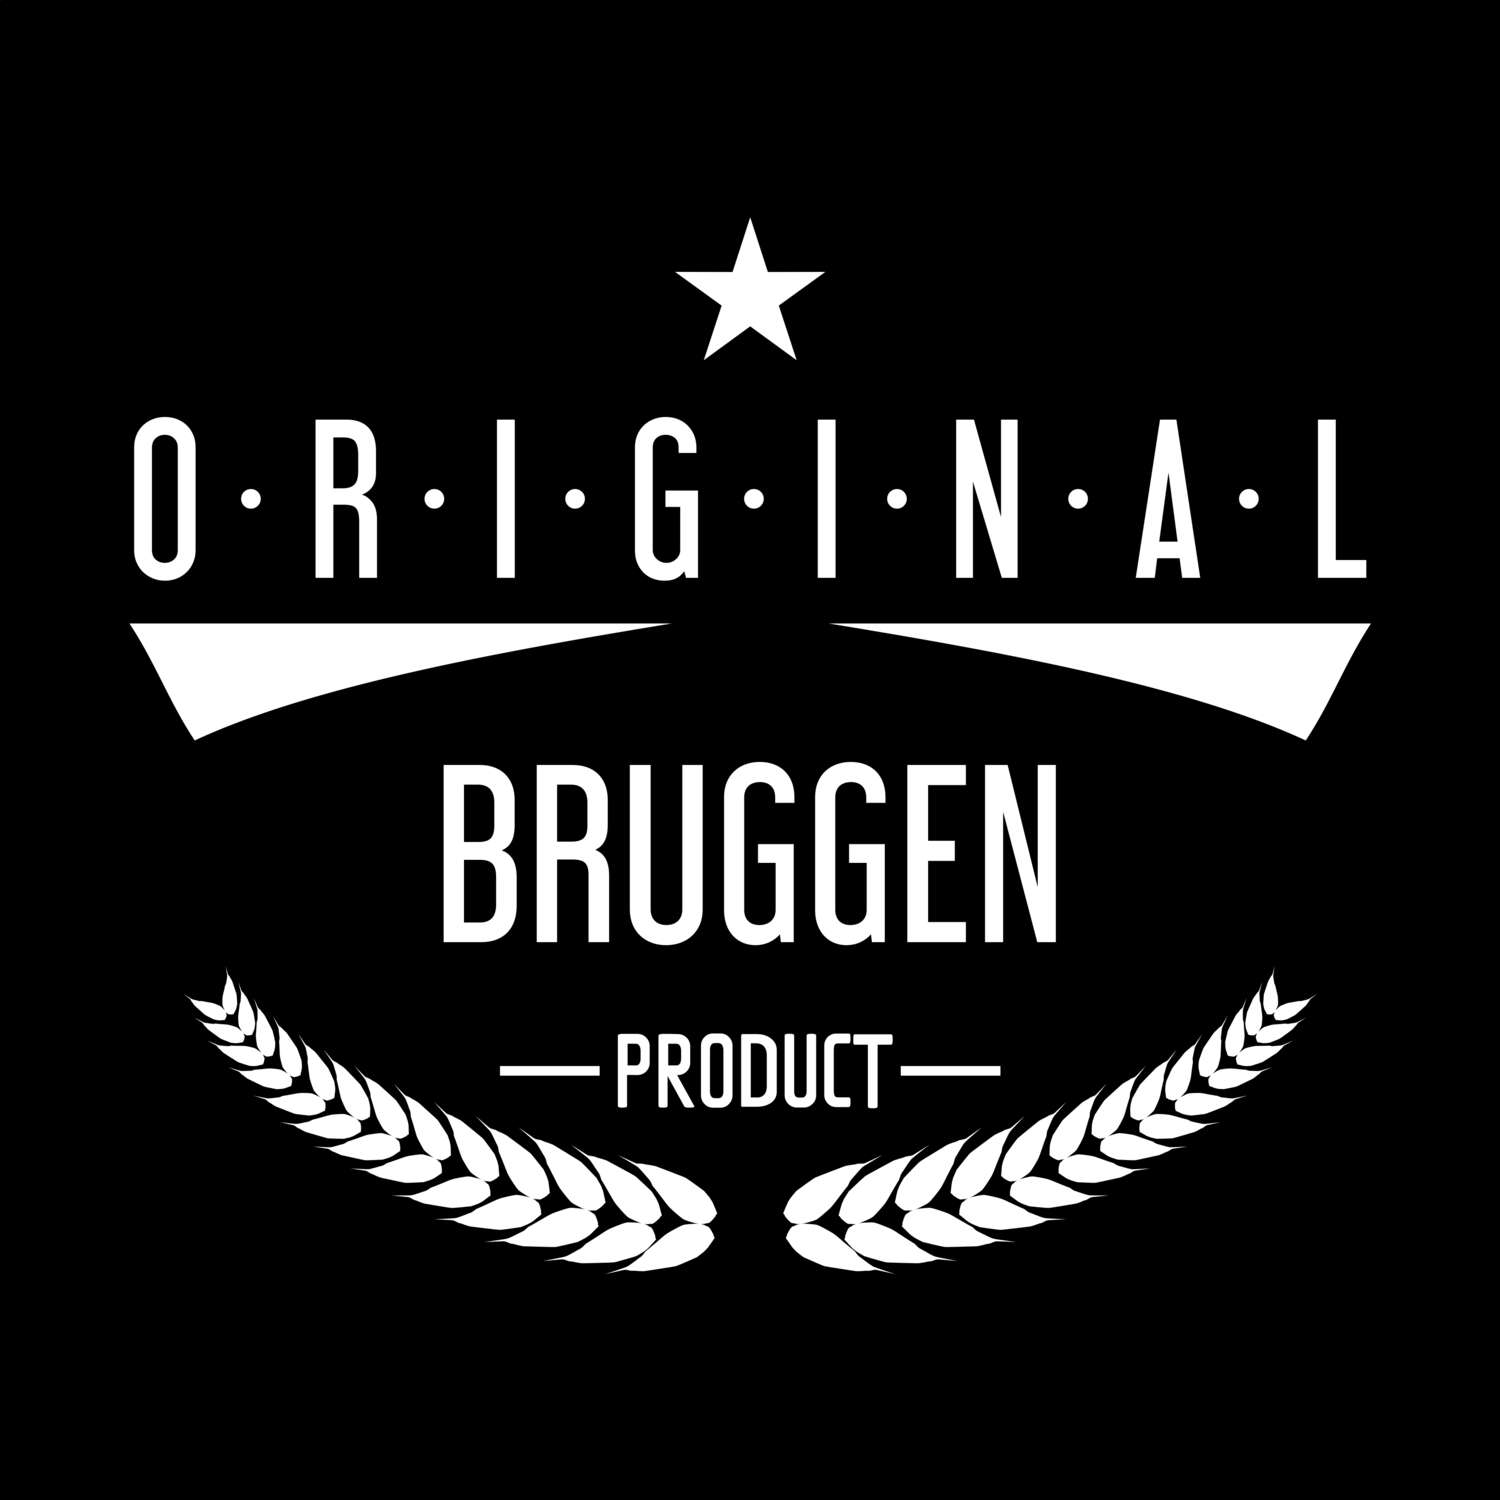 Bruggen T-Shirt »Original Product«